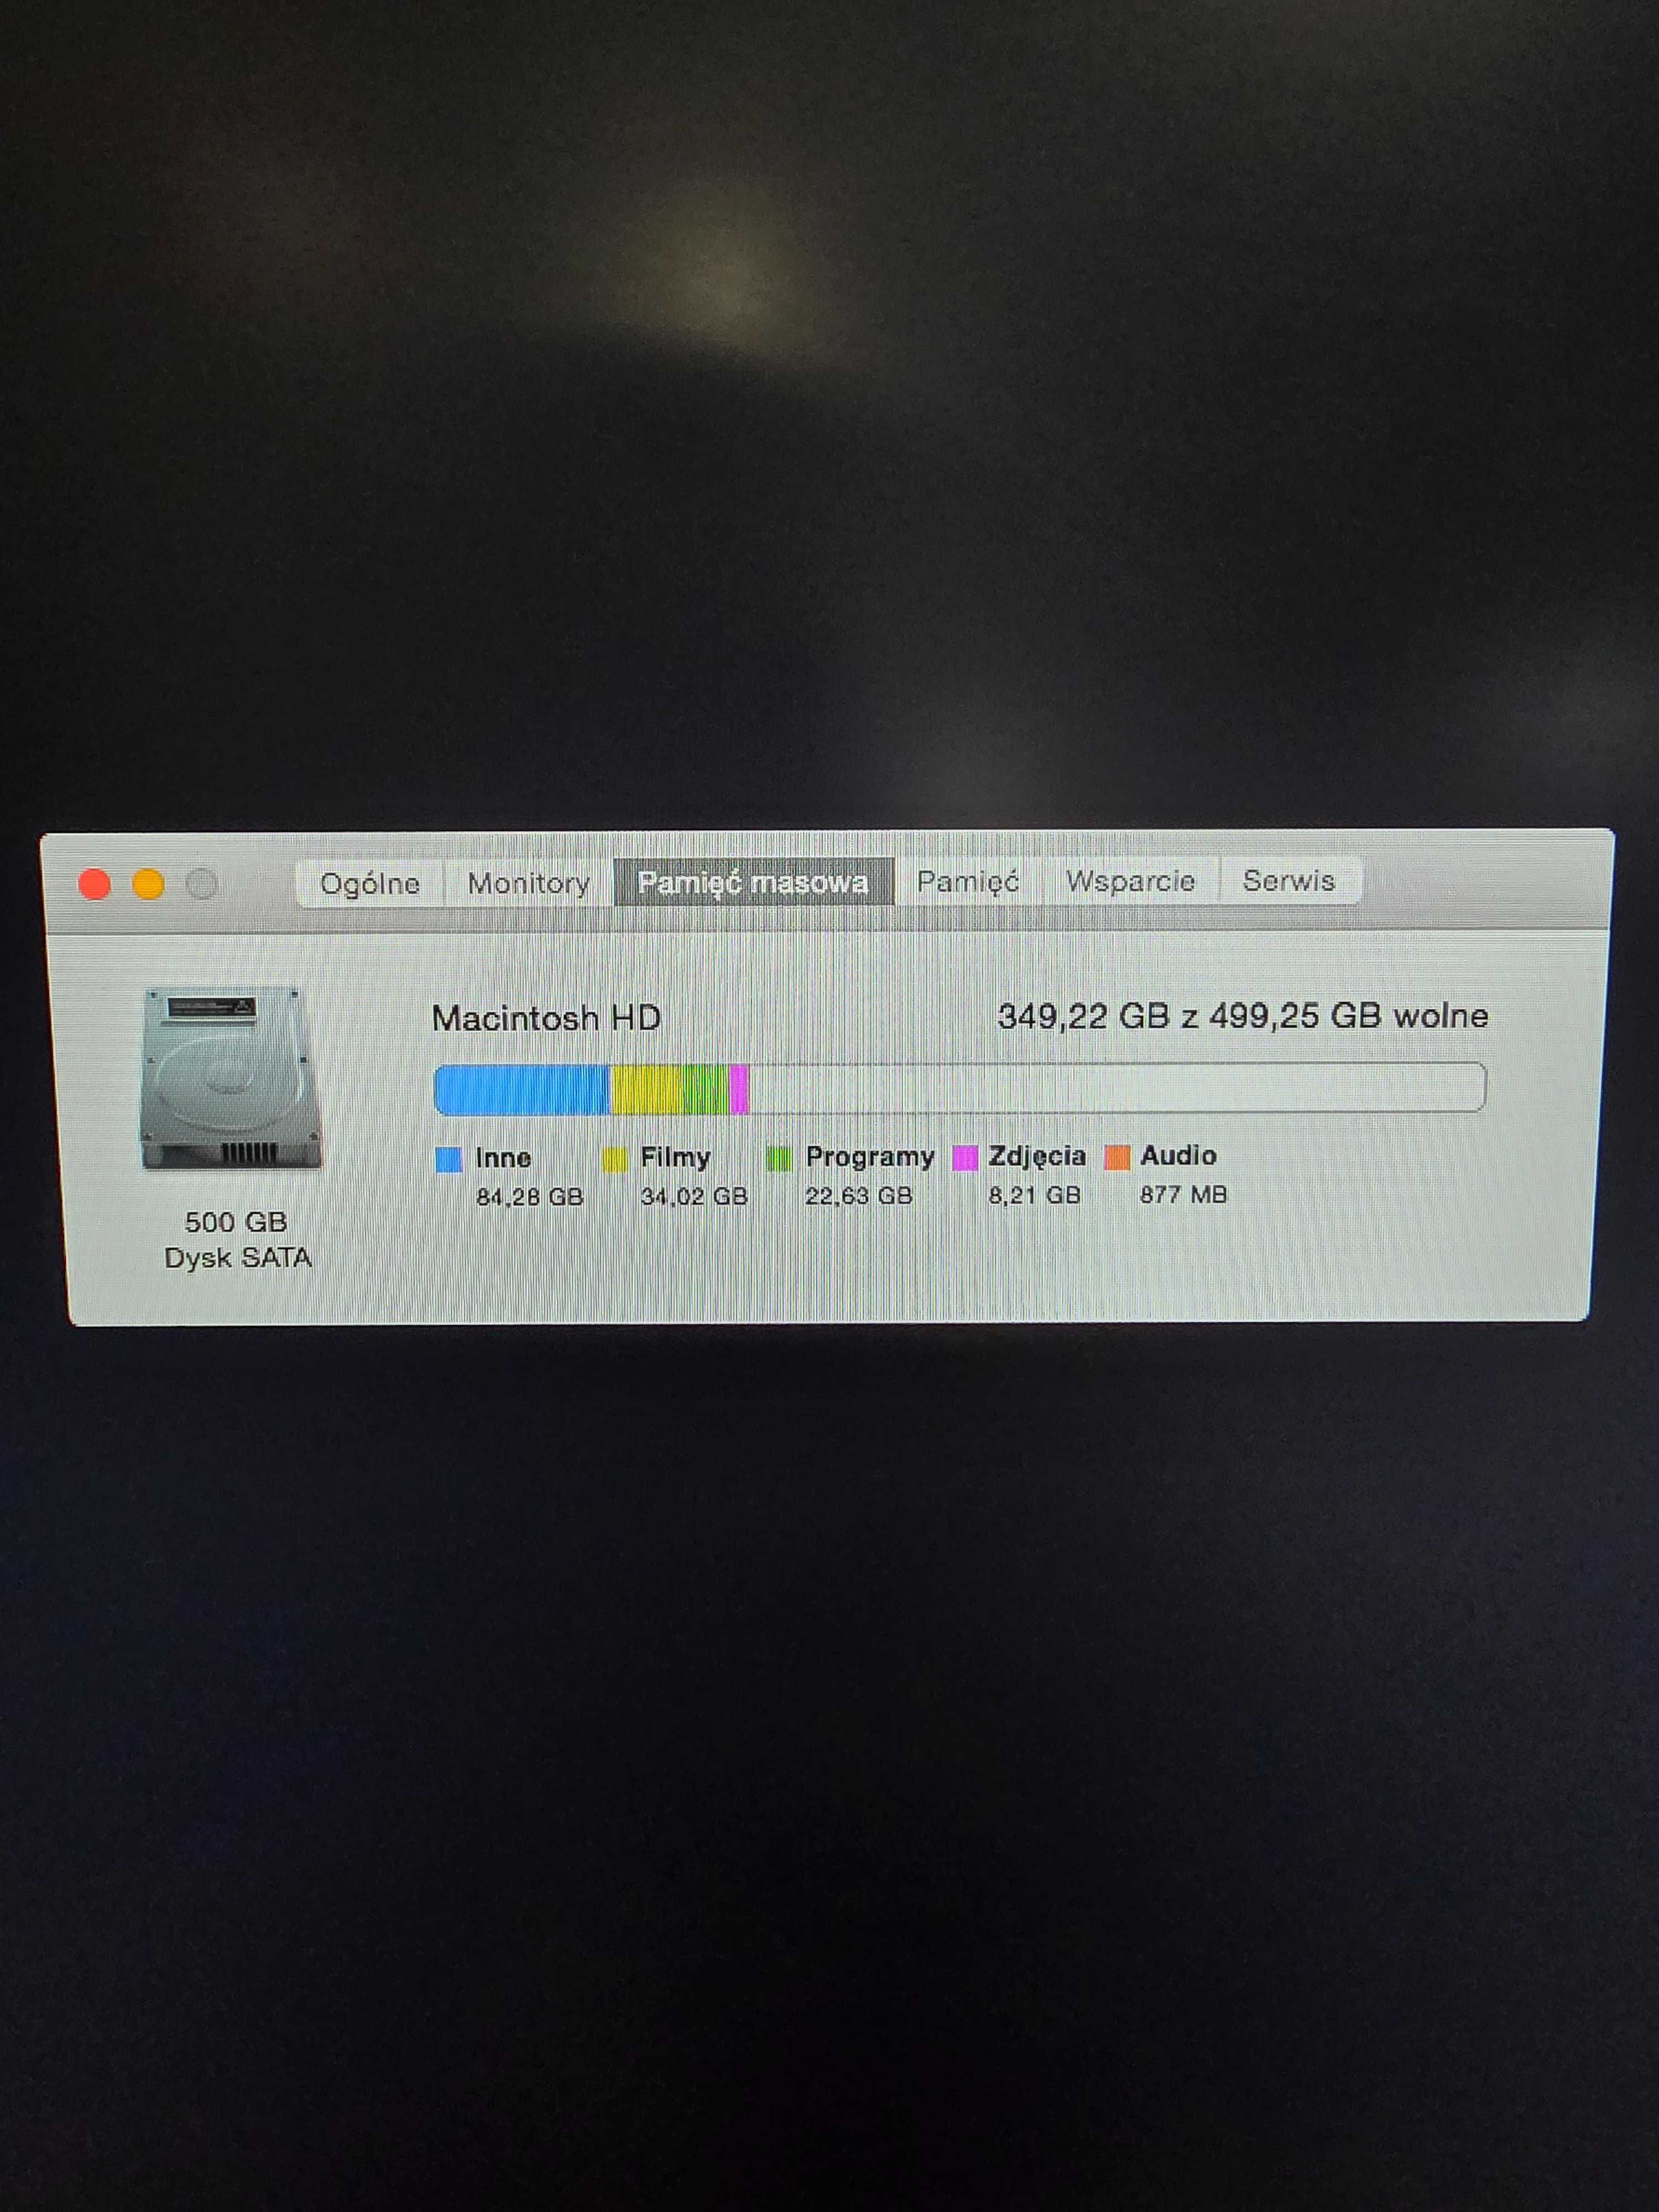 Appl Mac Mini i5 | 16 GB RAM | 500 GB | late 2012